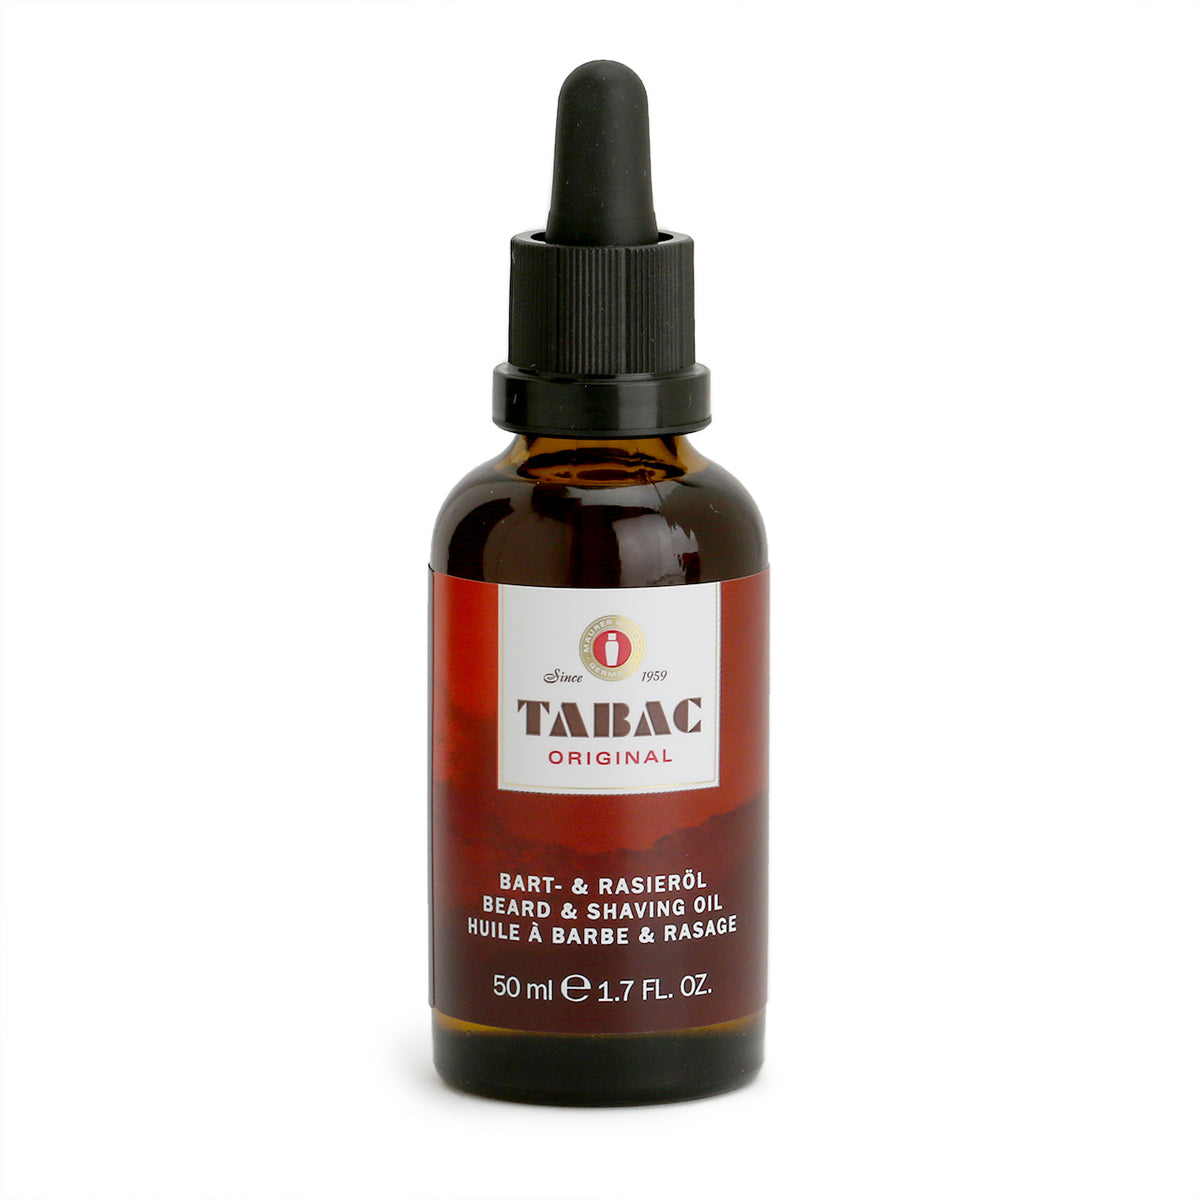 Tabac Beard oil in n amber bottle with black dropper-lid